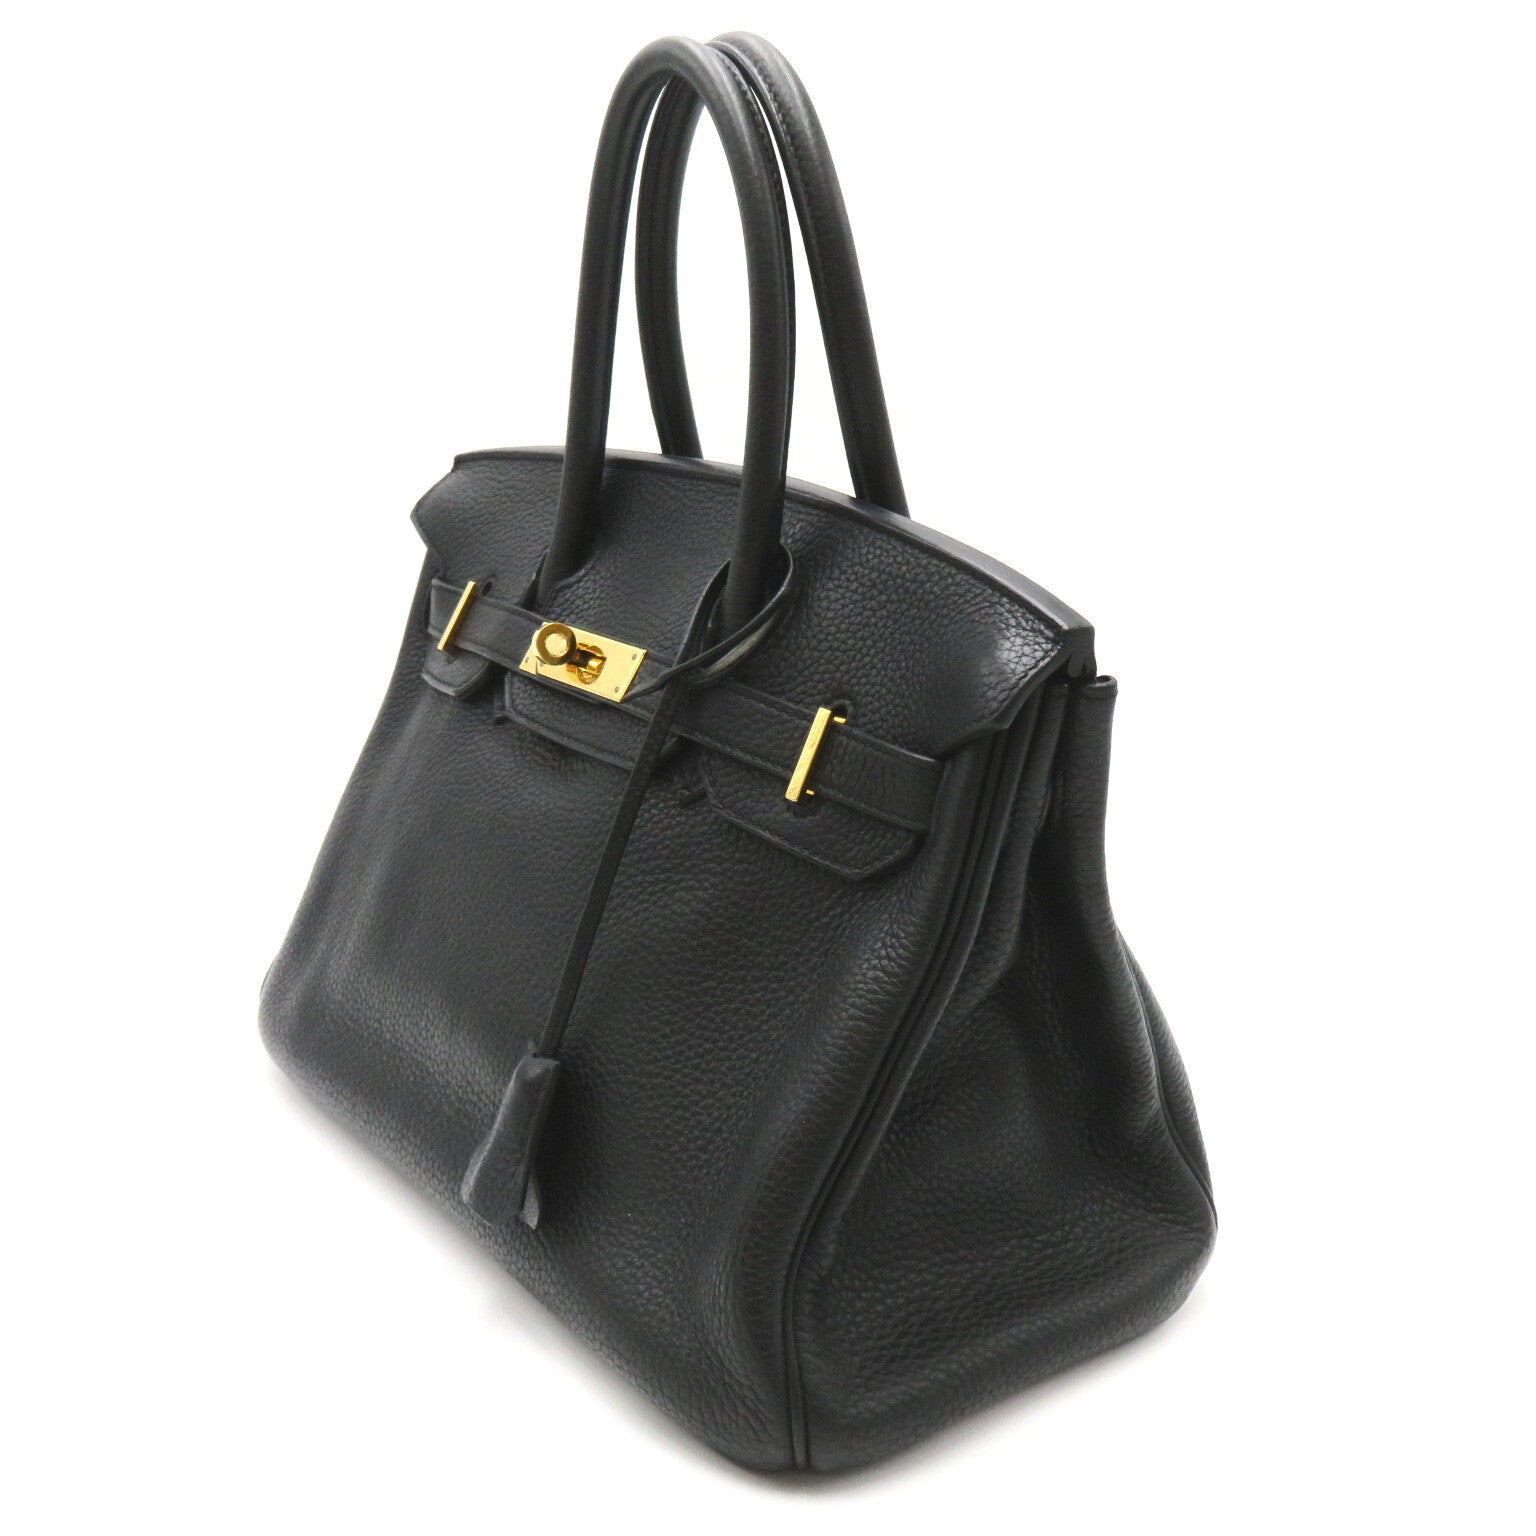 Hermes Hermes Birkin 30 Black Handbag Handbag Handbag